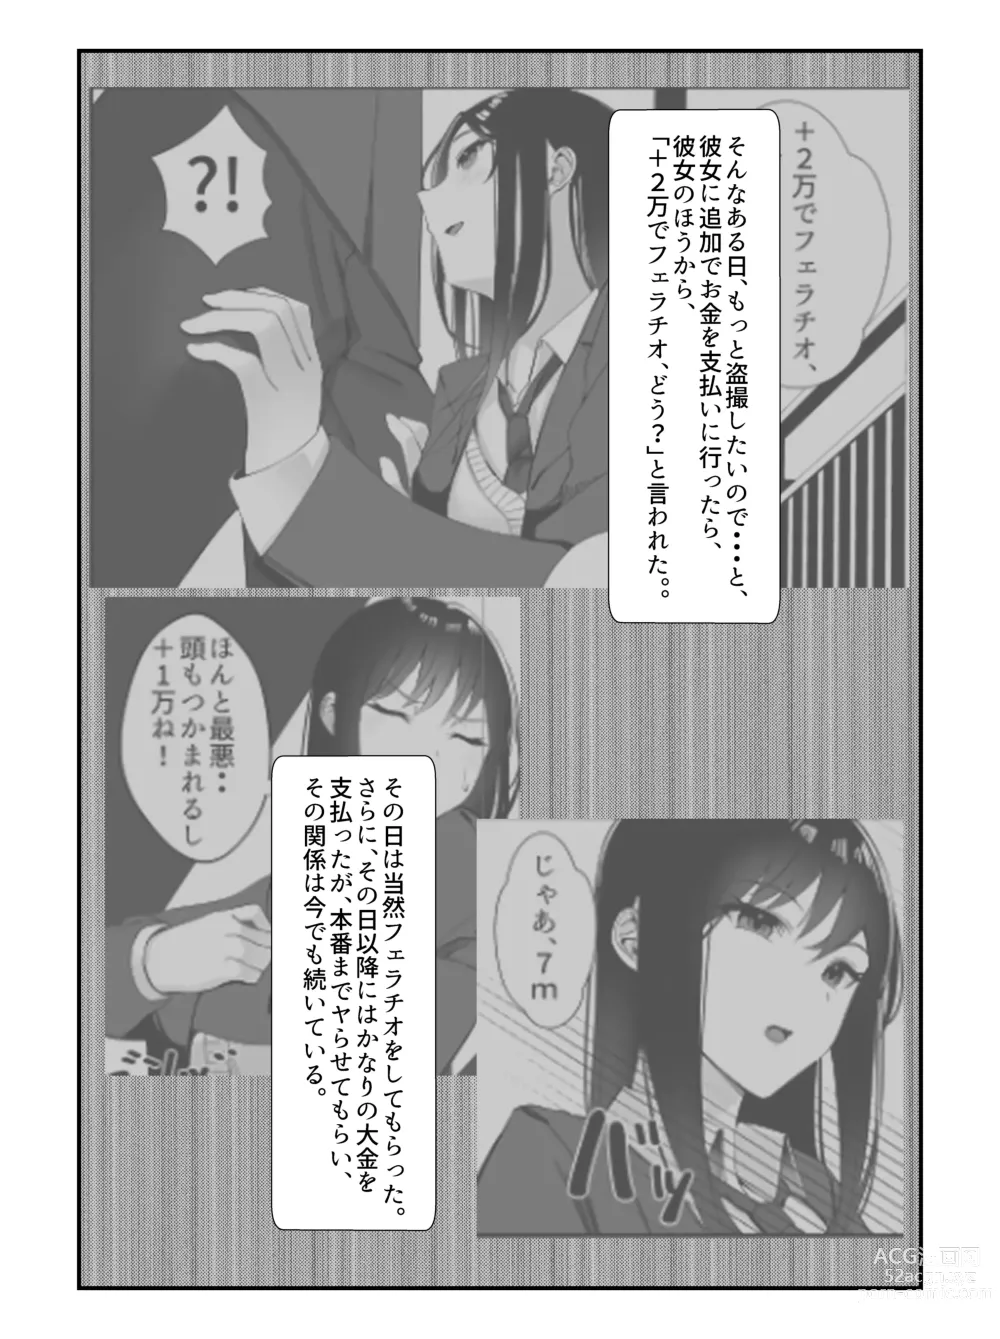 Page 7 of doujinshi Gakkou Ichi no Bijo ni Densha no Naka de Bukkakete Mita